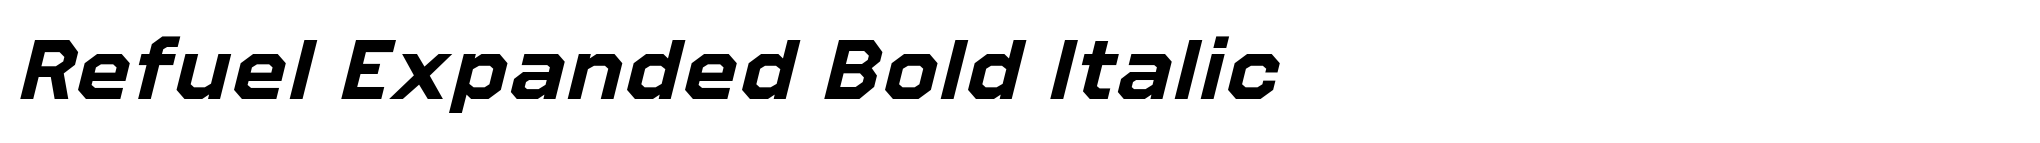 Refuel Expanded Bold Italic image